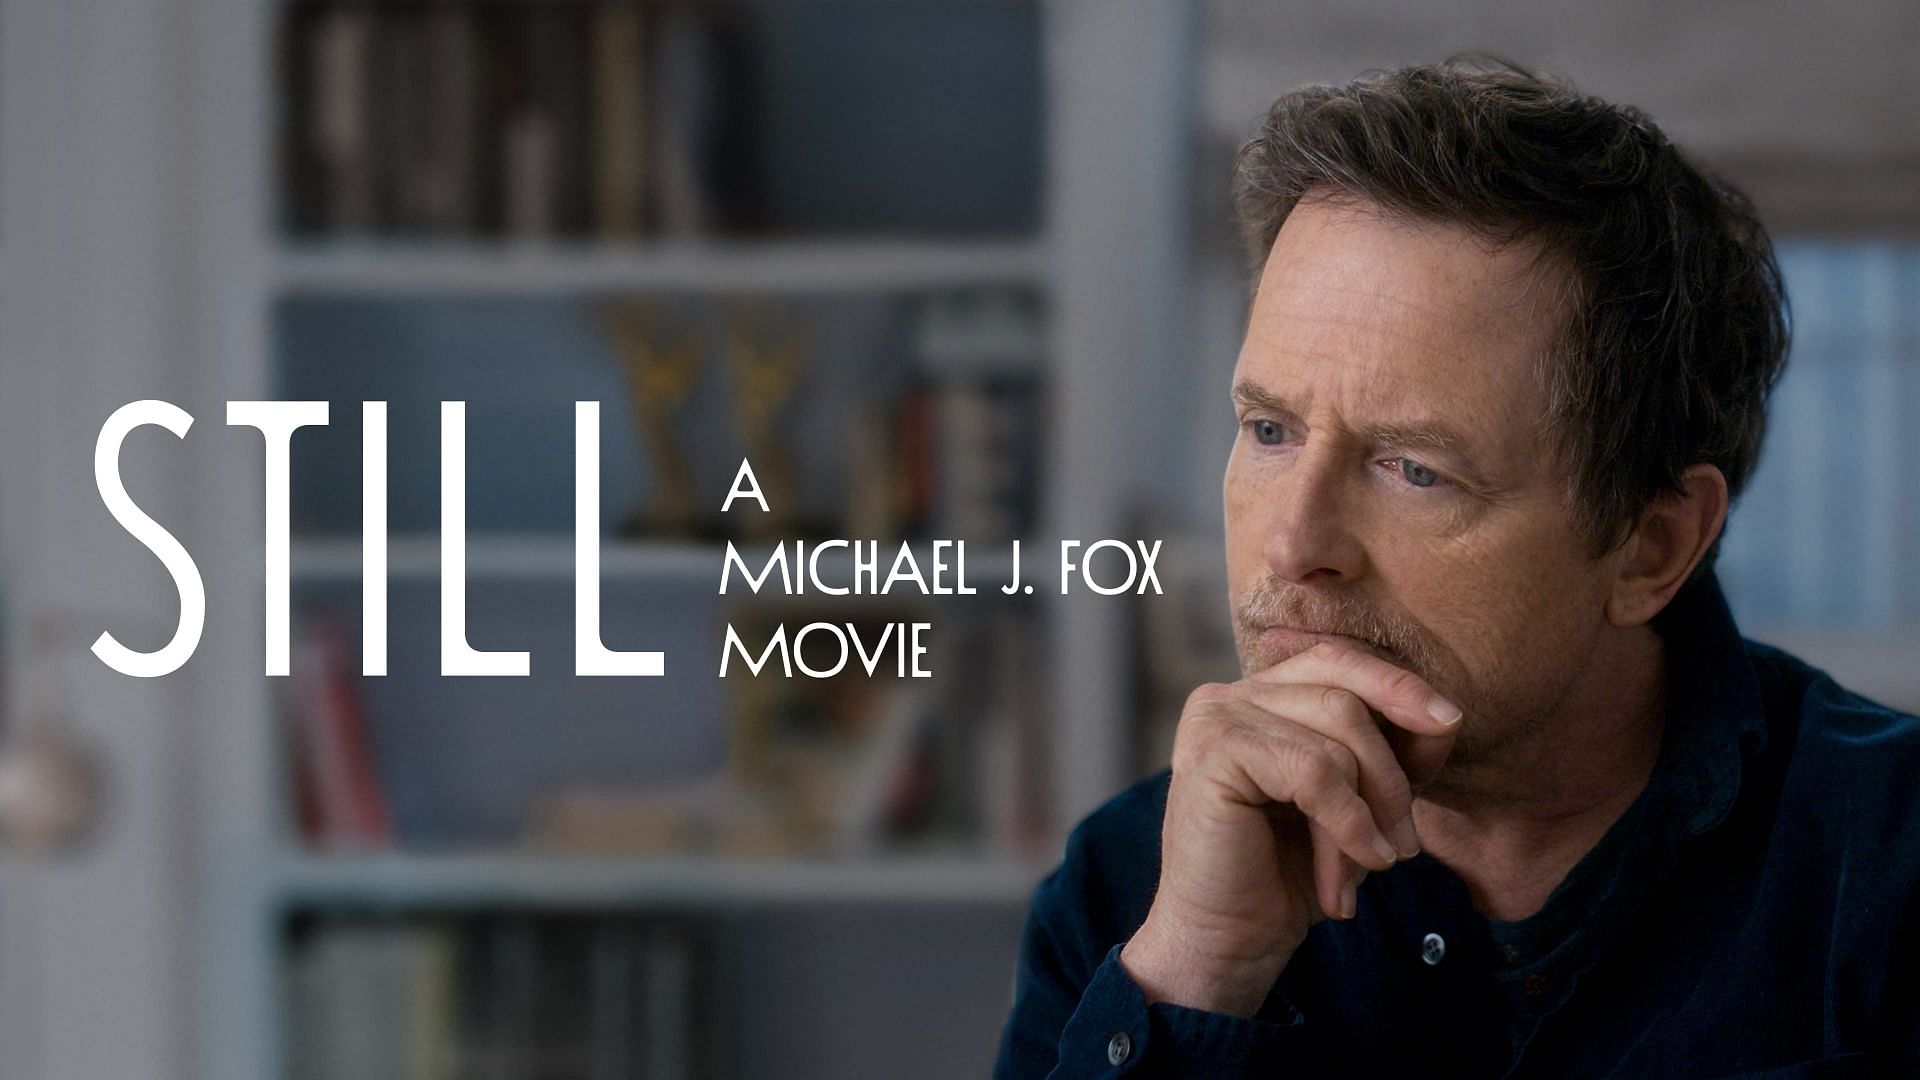 Still: A Michael J. Fox Movie (Image via Apple TV+)